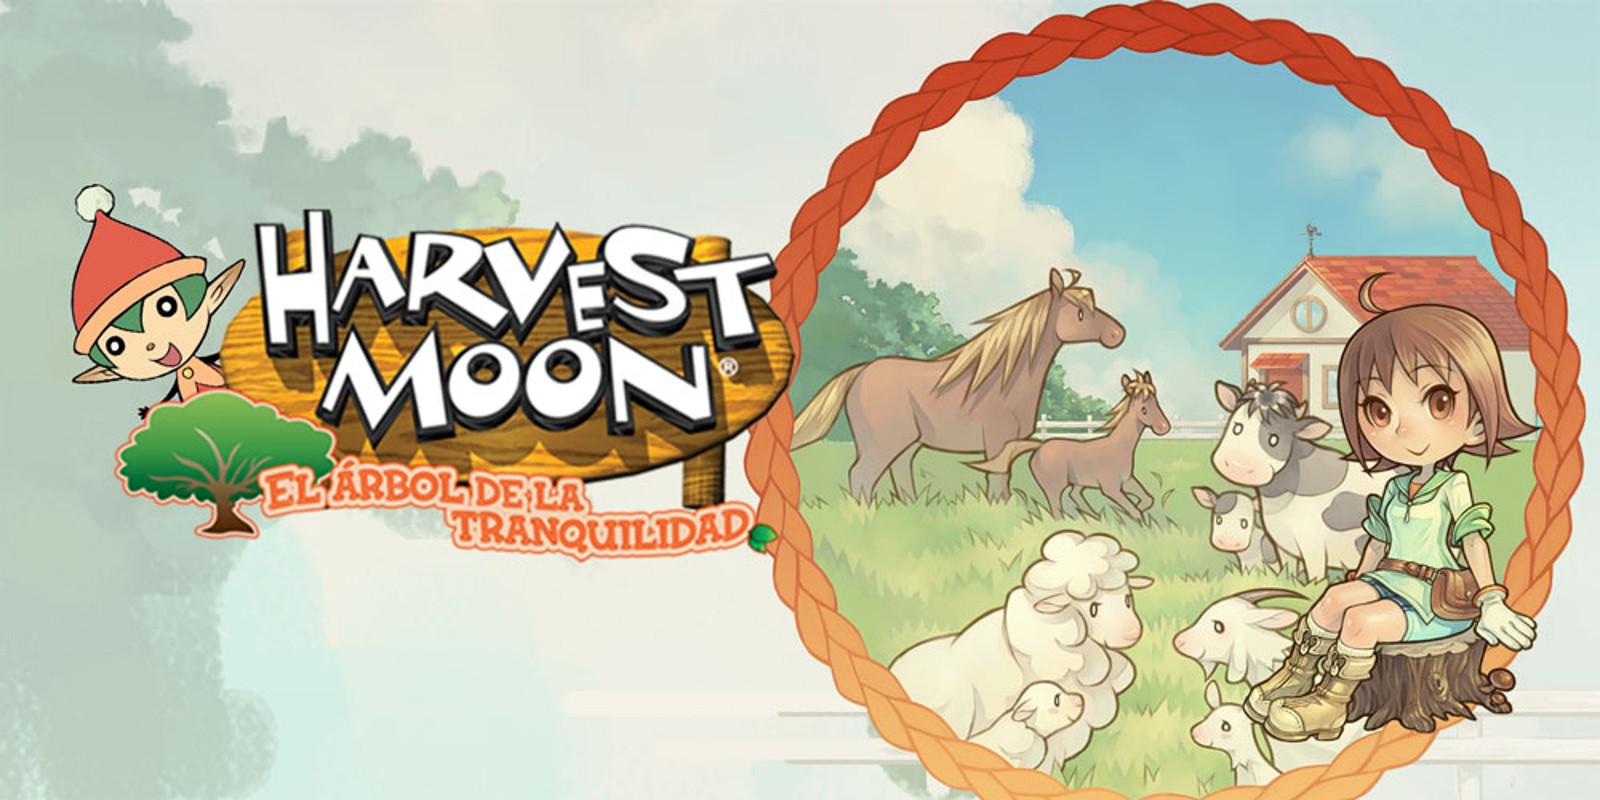 Harvest Moon: El árbol de la tranquilidad